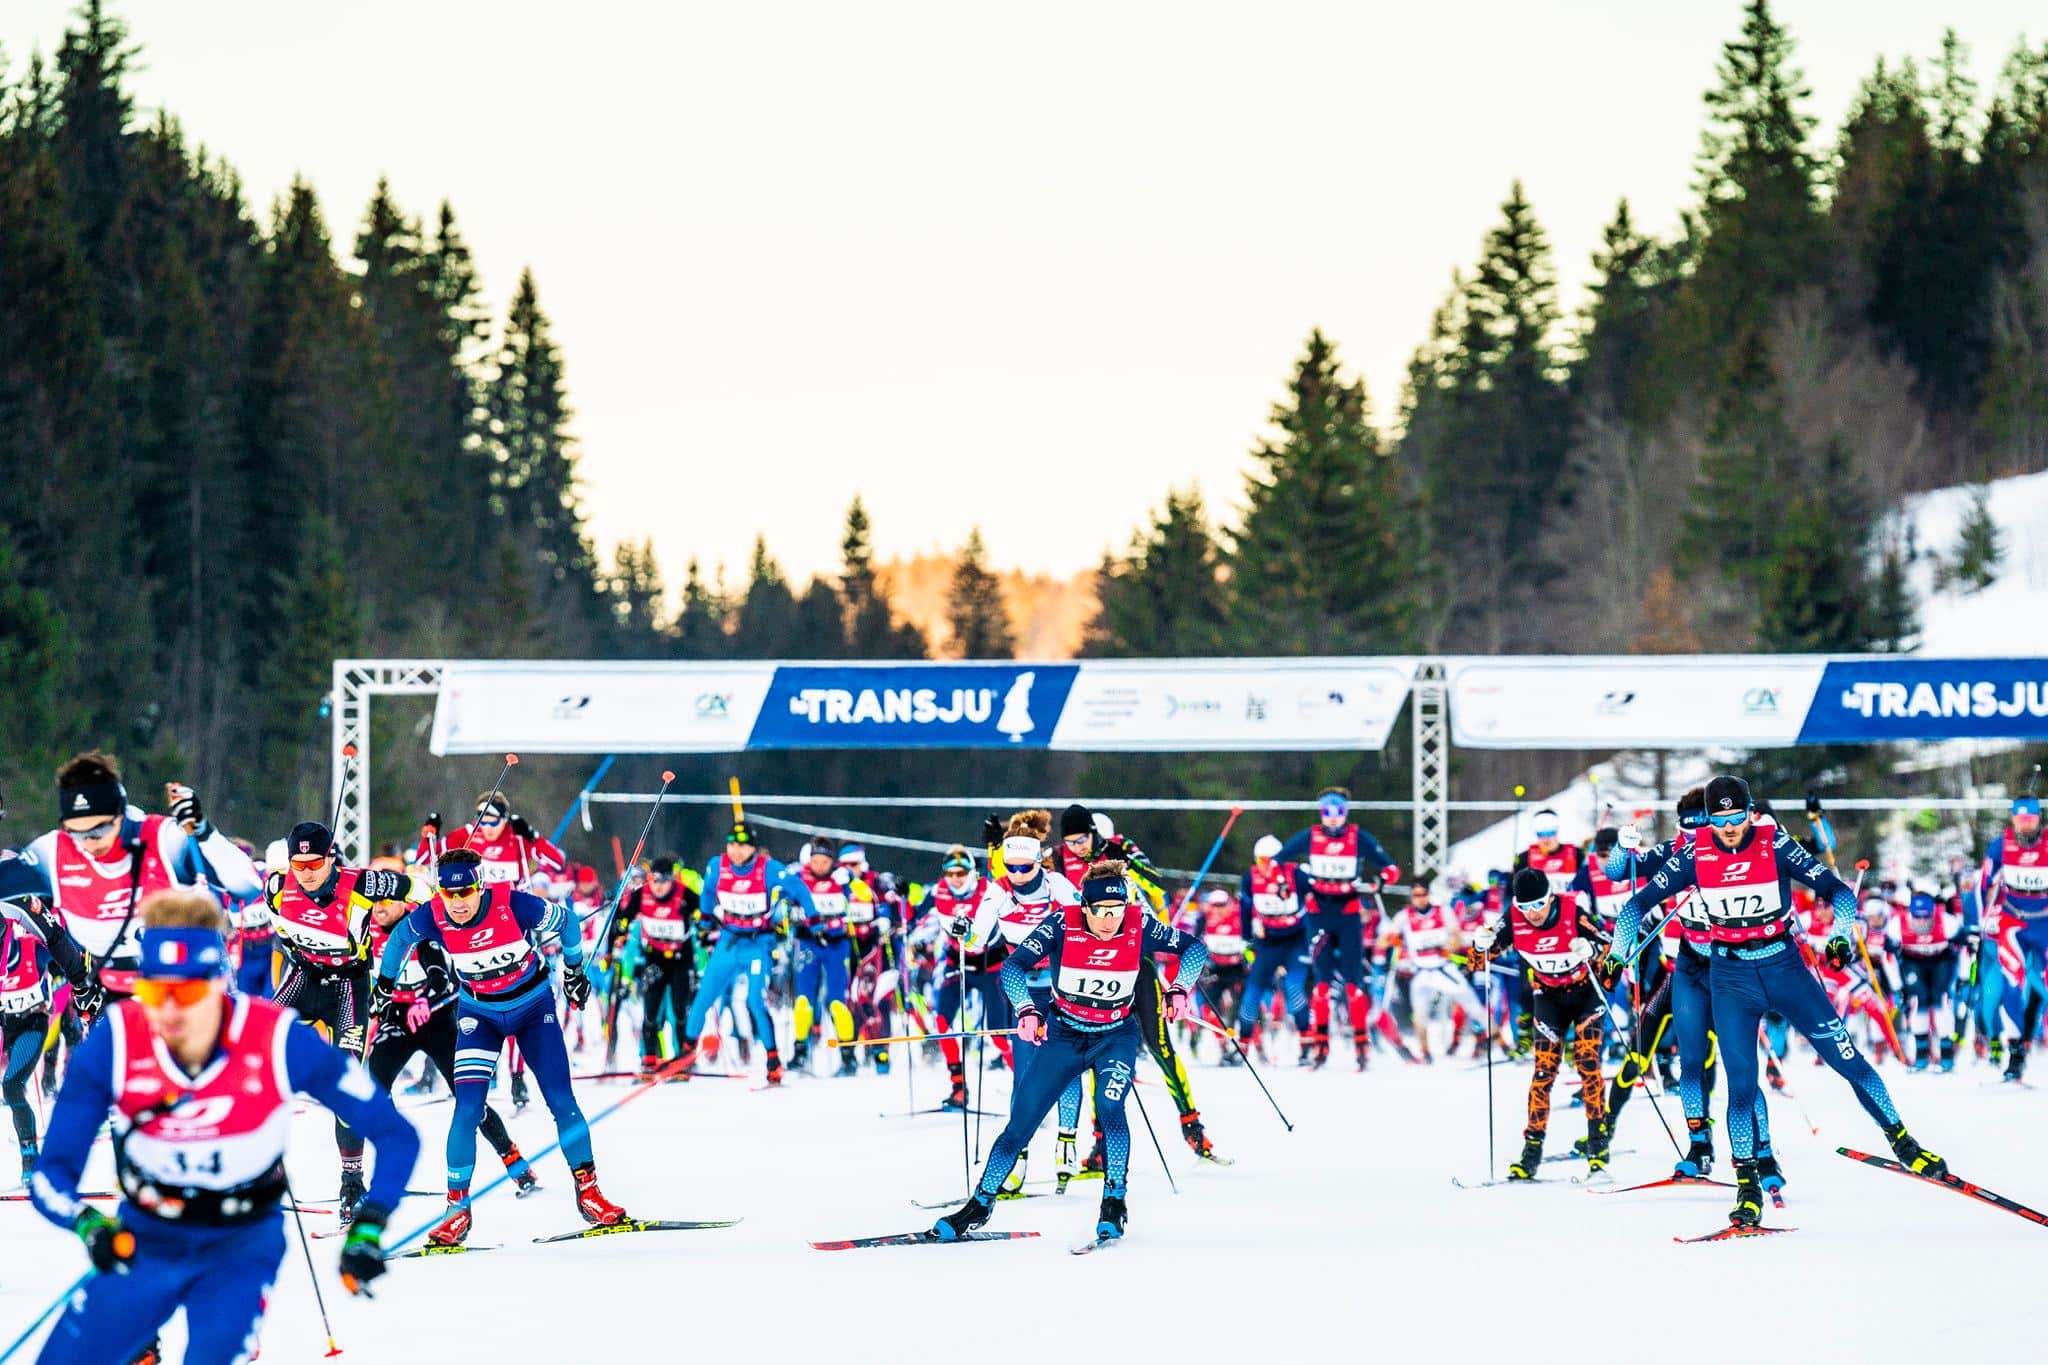 Start of La Transju - Cross-country ski race